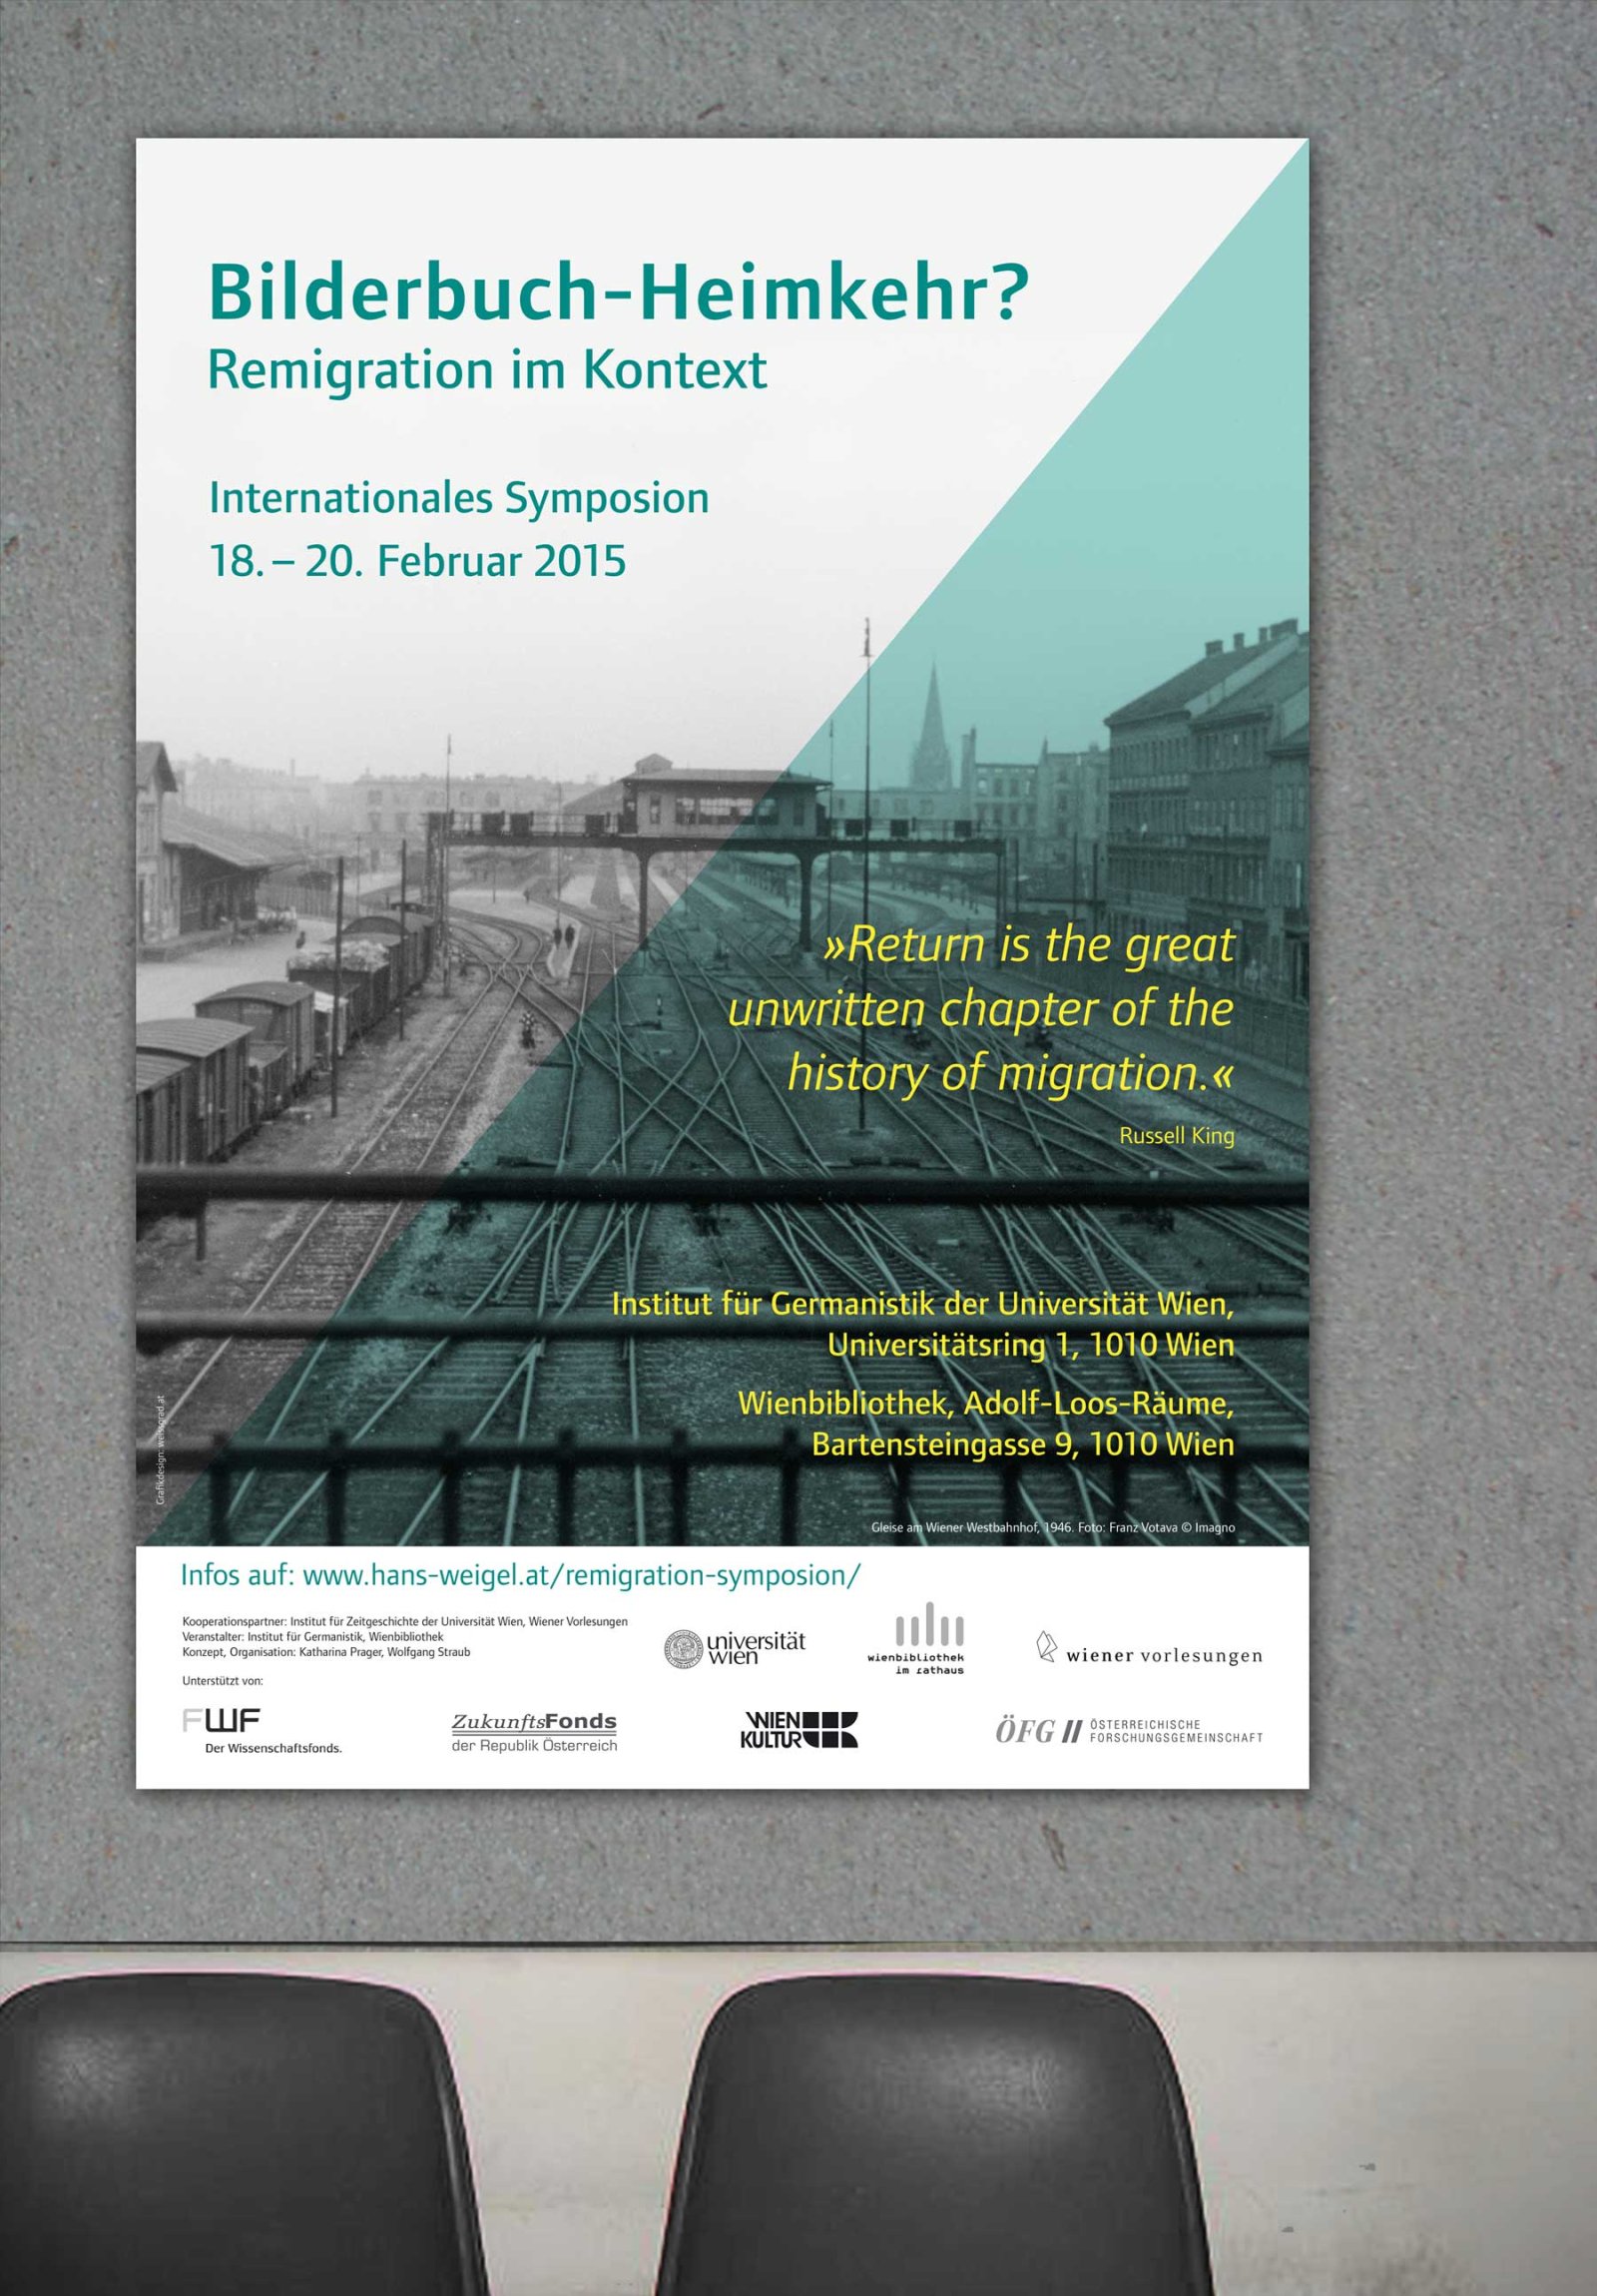 Plakat für das Symposium Bilderbuch-Heimkehr? Remigration im Kontext